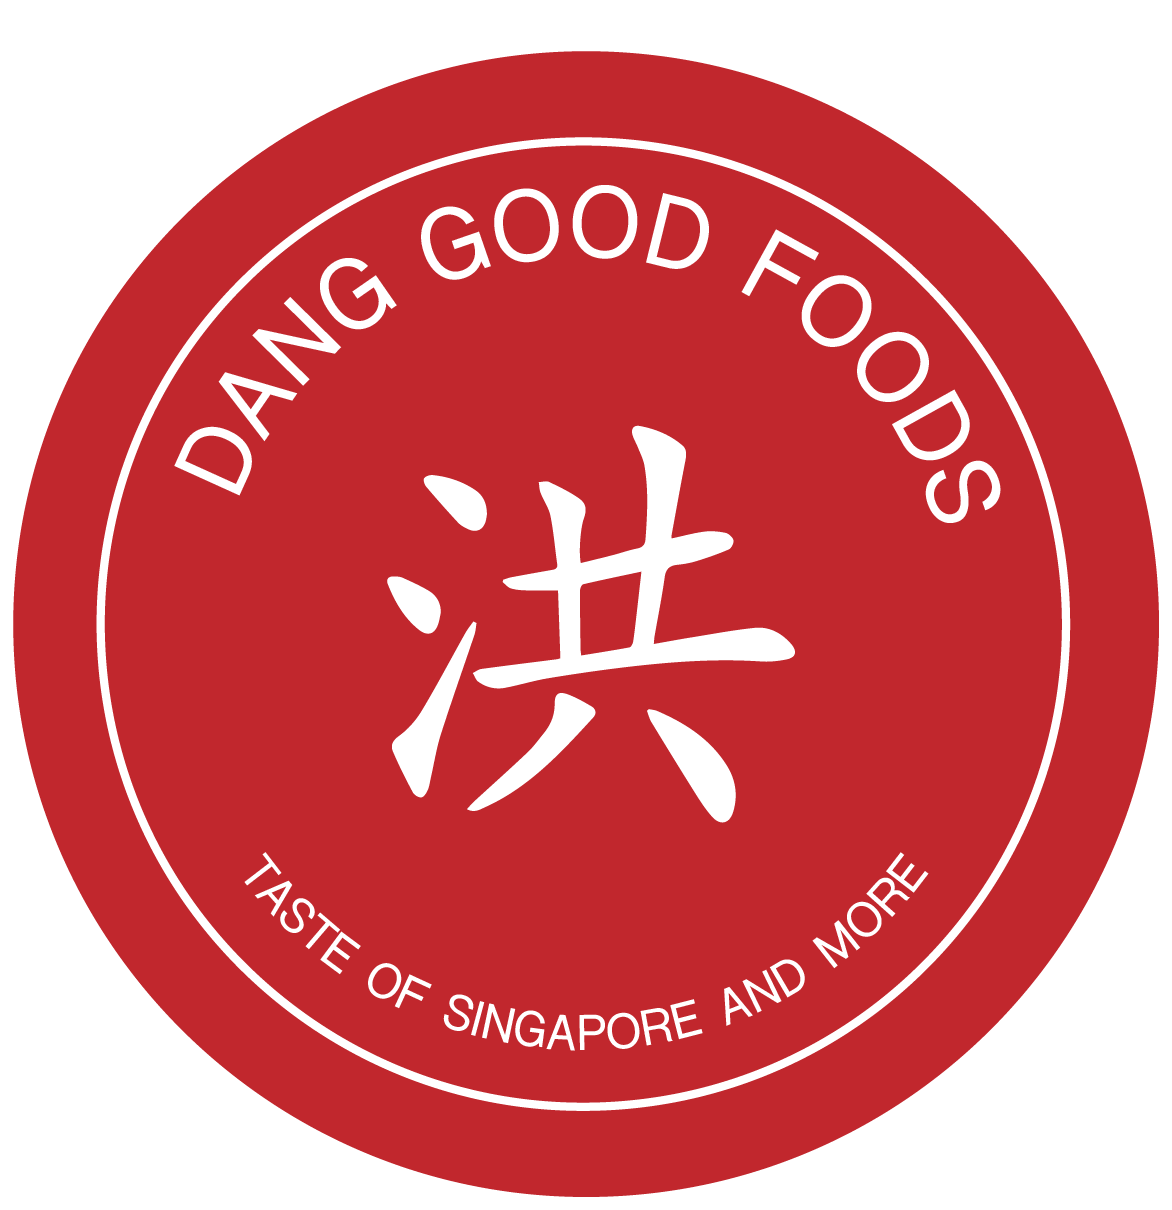 Dang Good Foods